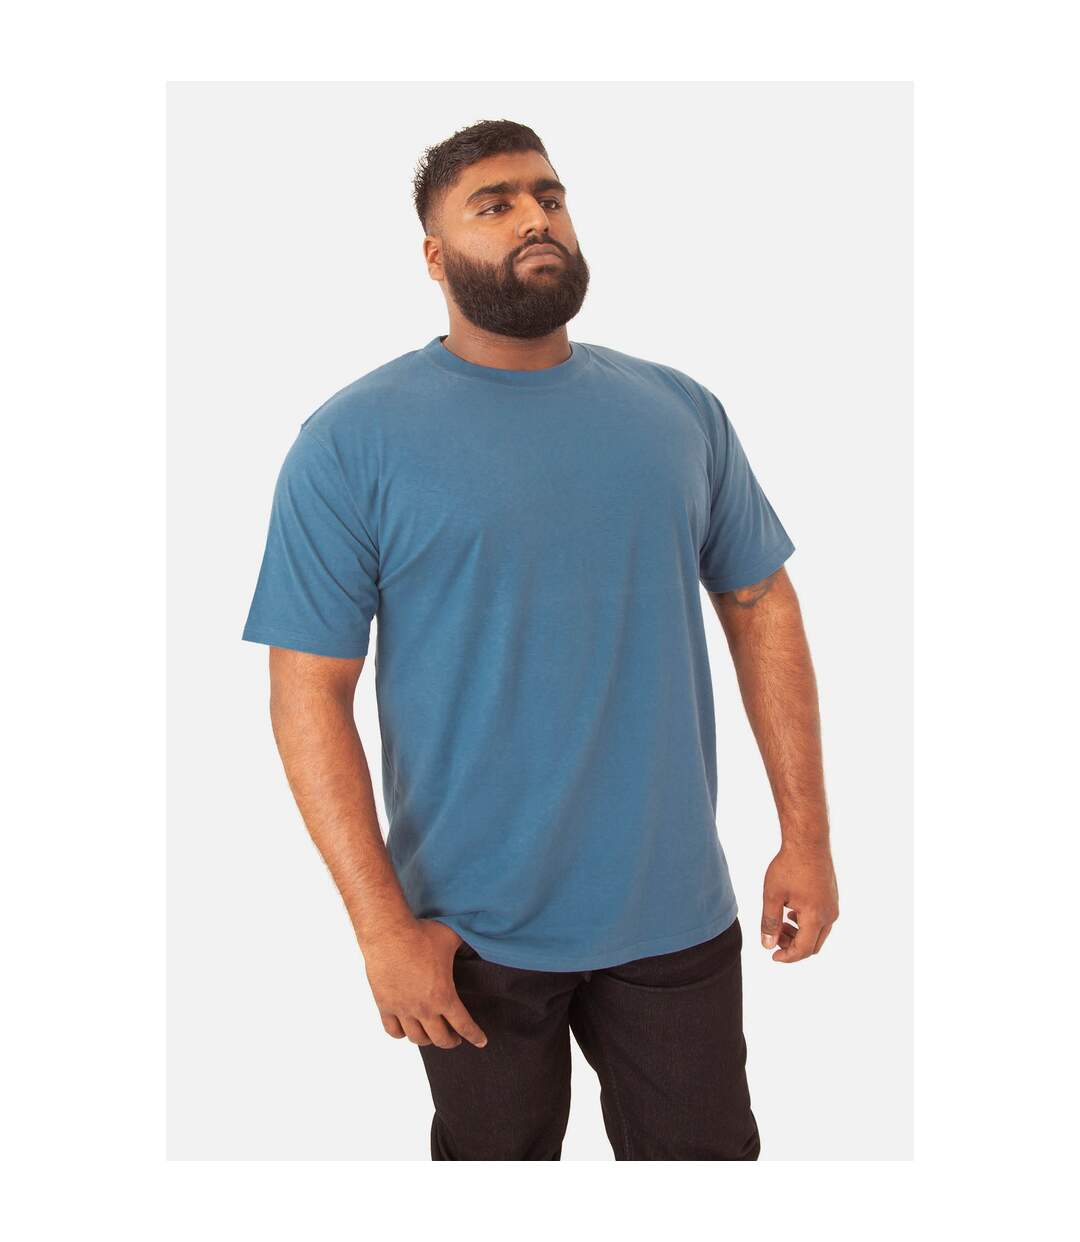 Duke - T-shirt FLYERS - Homme (Grande taille) (Bleu sarcelle) - UTDC170